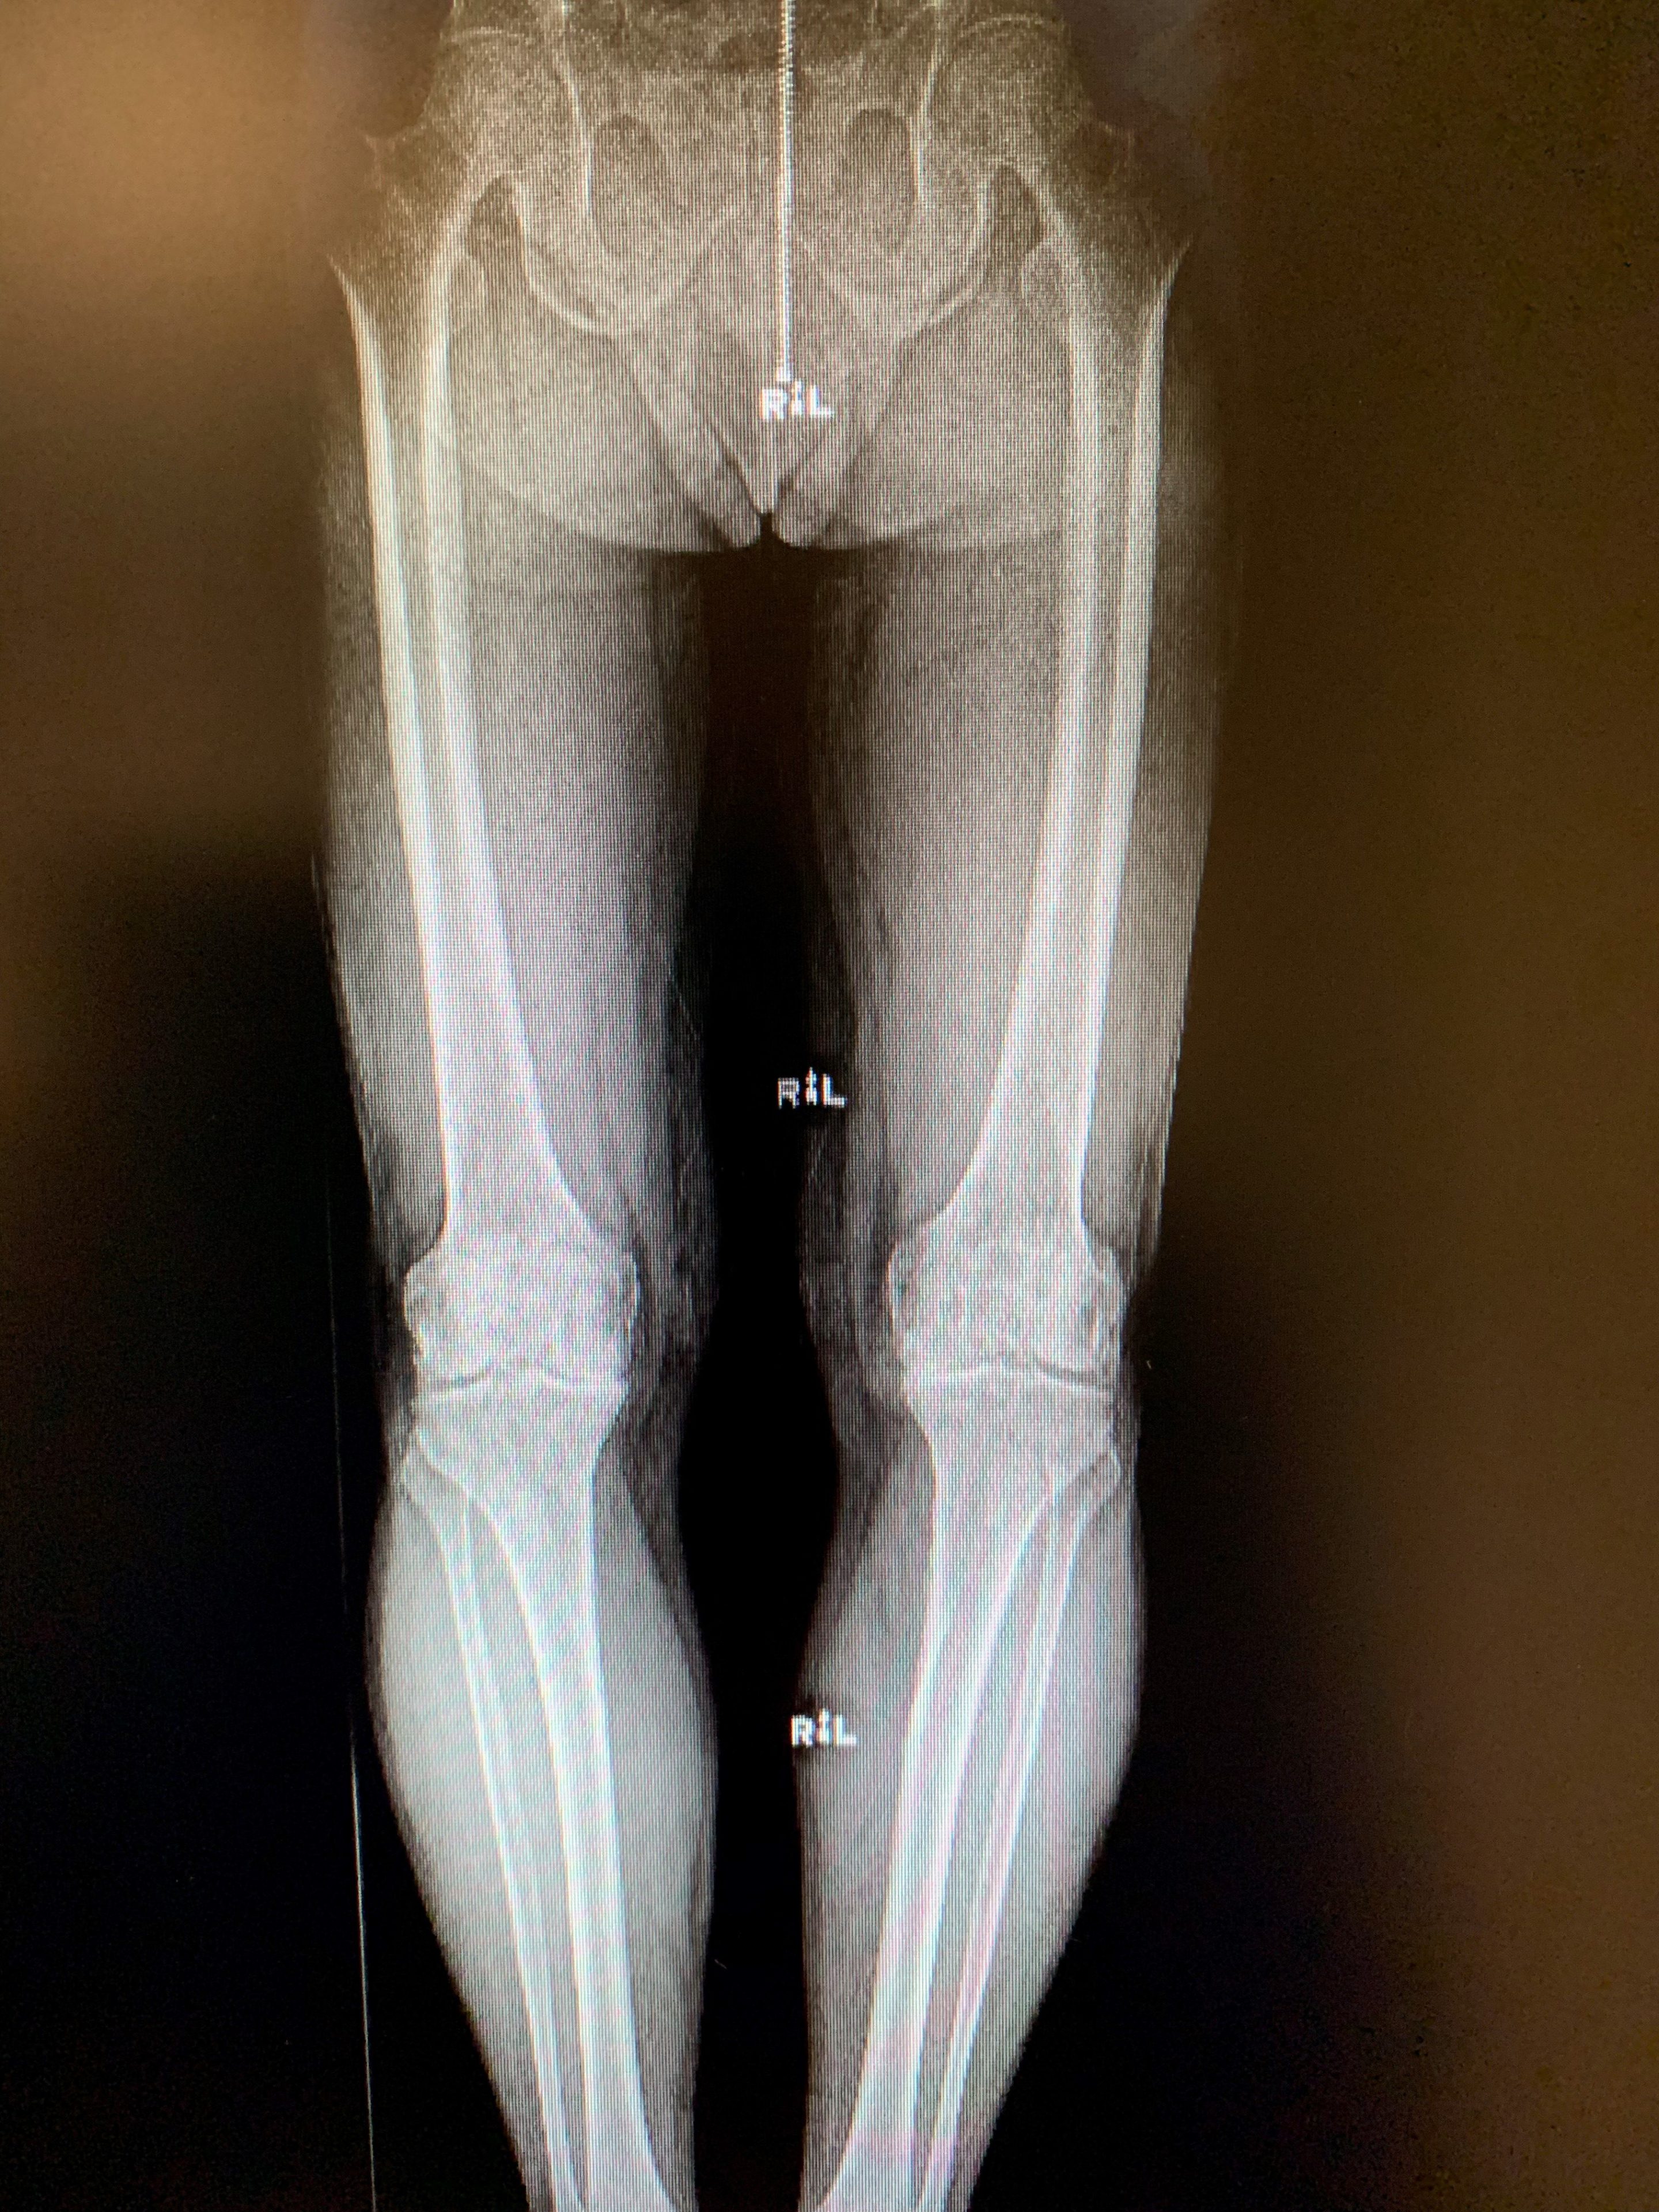 Reemplazo bilateral simultáneo de rodilla unicondilar en malea de 67 años